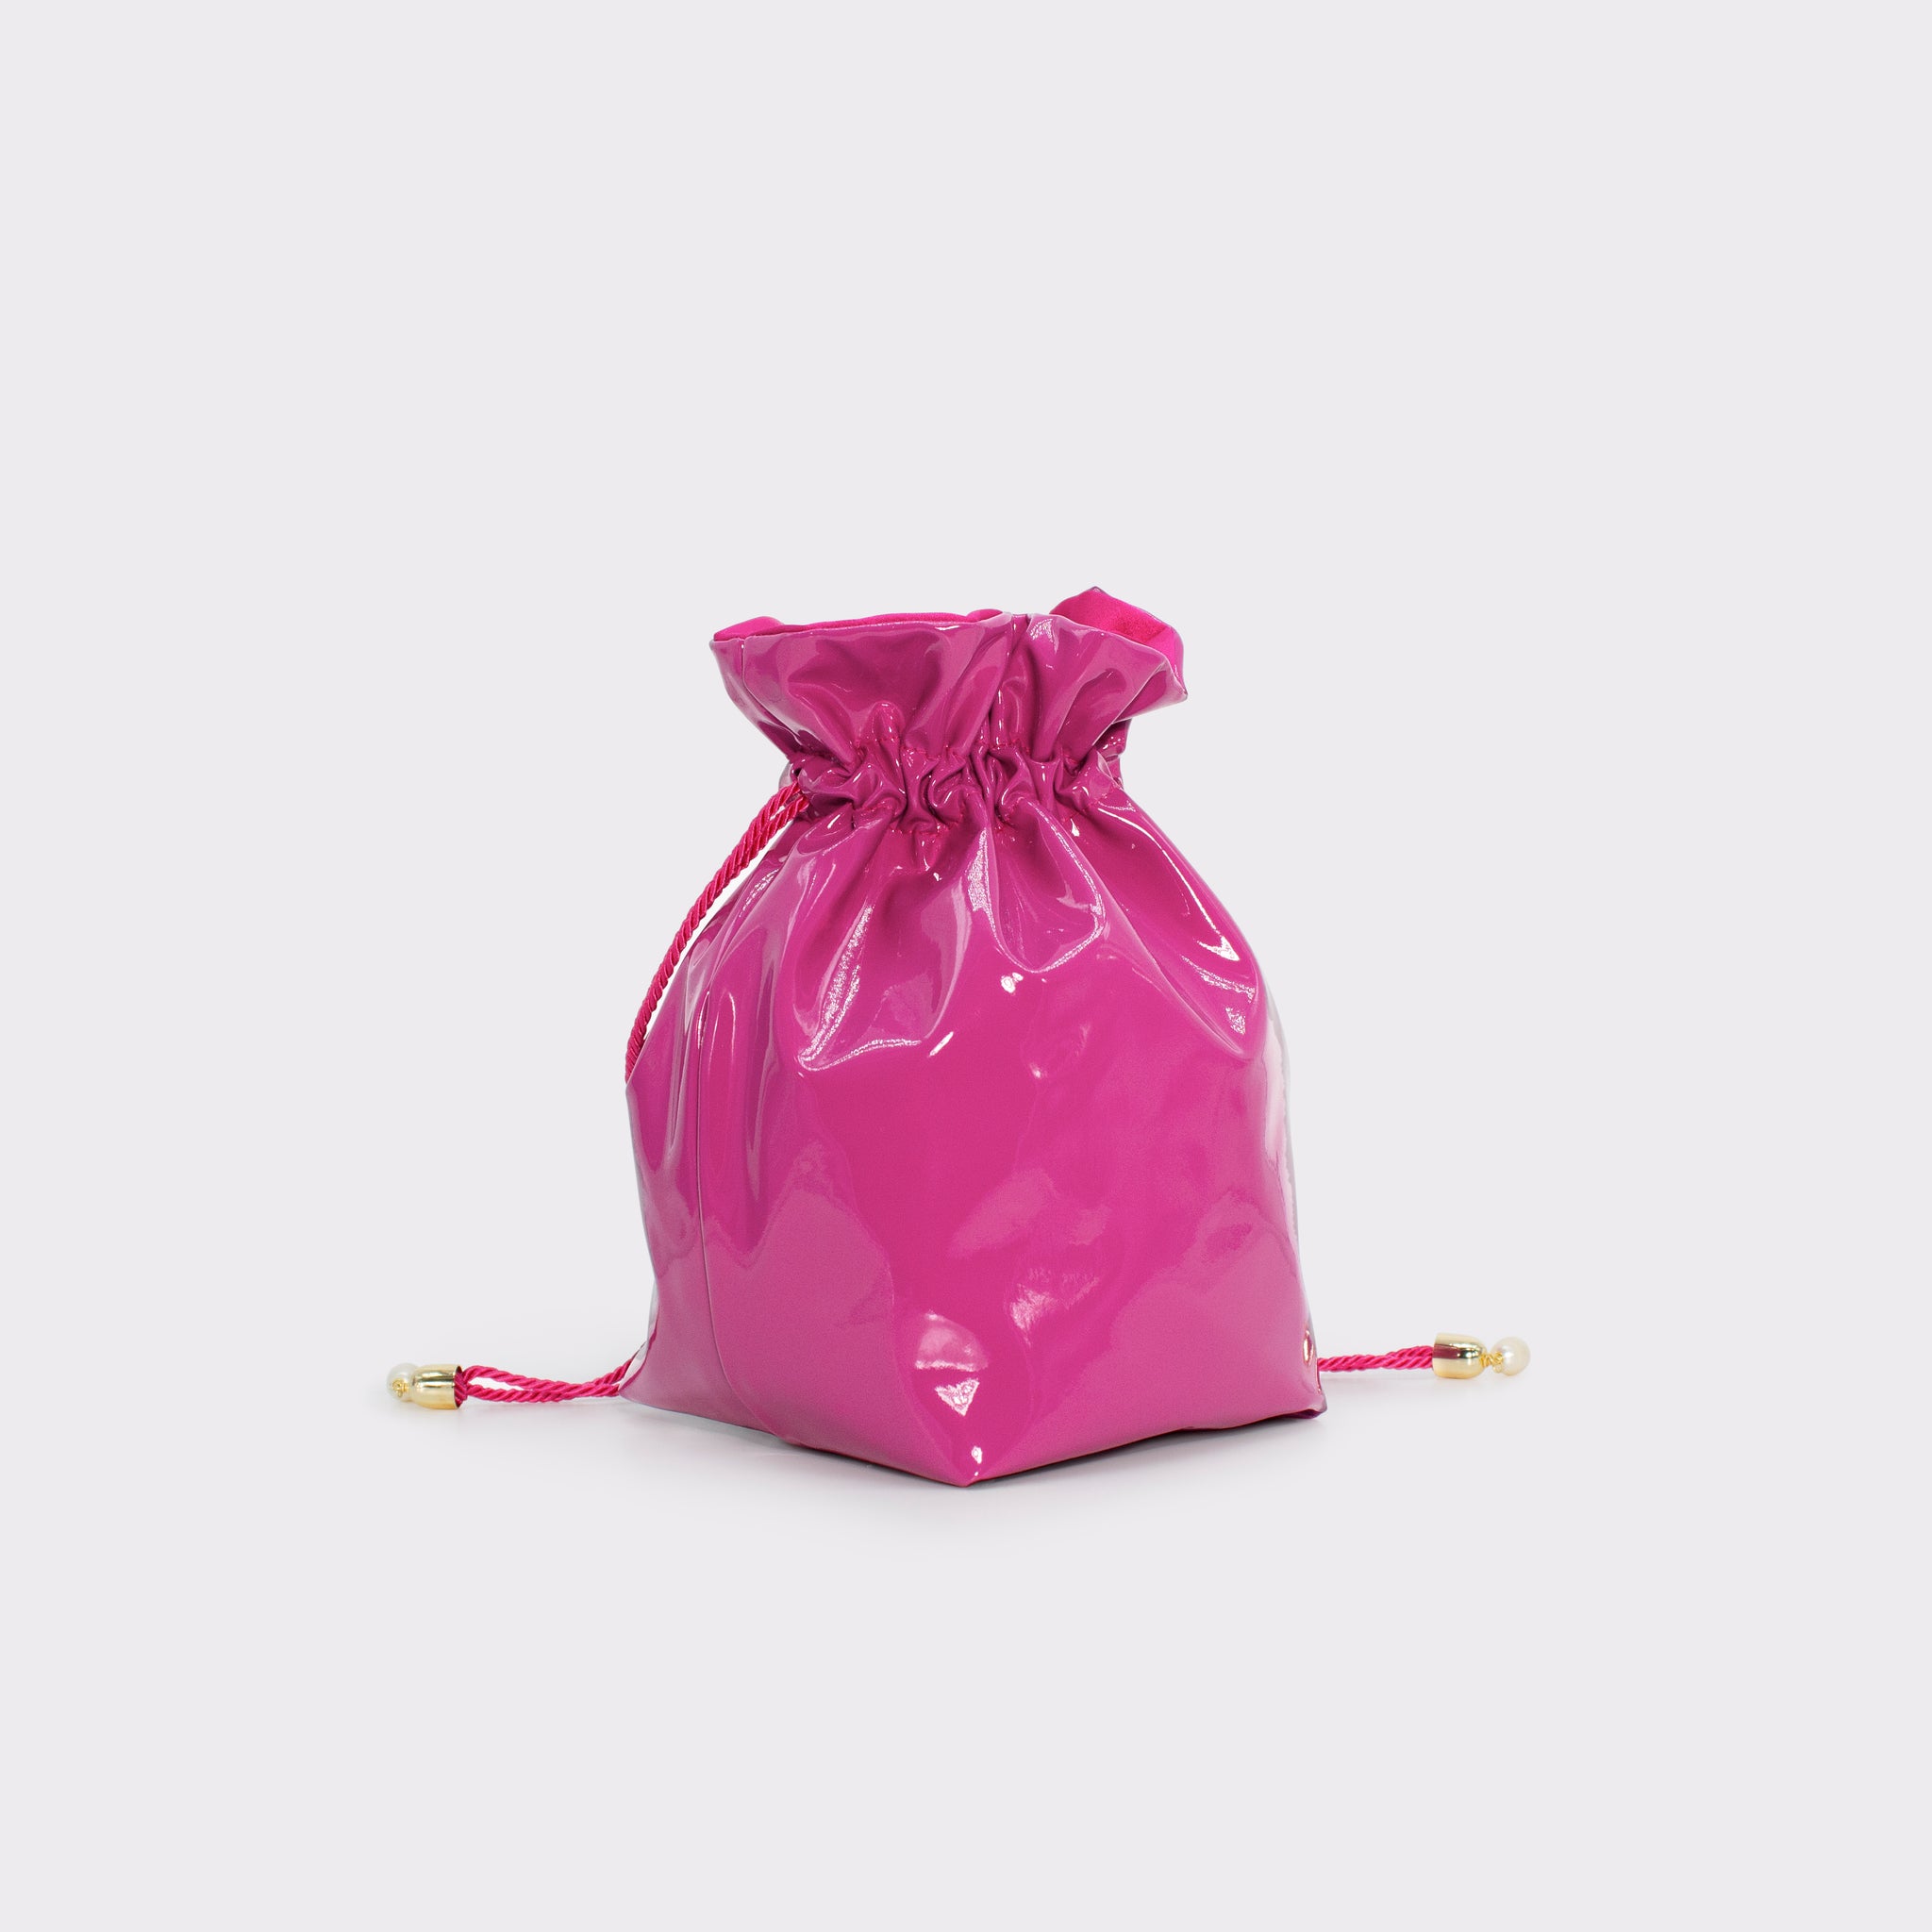 La Glossy bucket bag in colorazione orchid flower